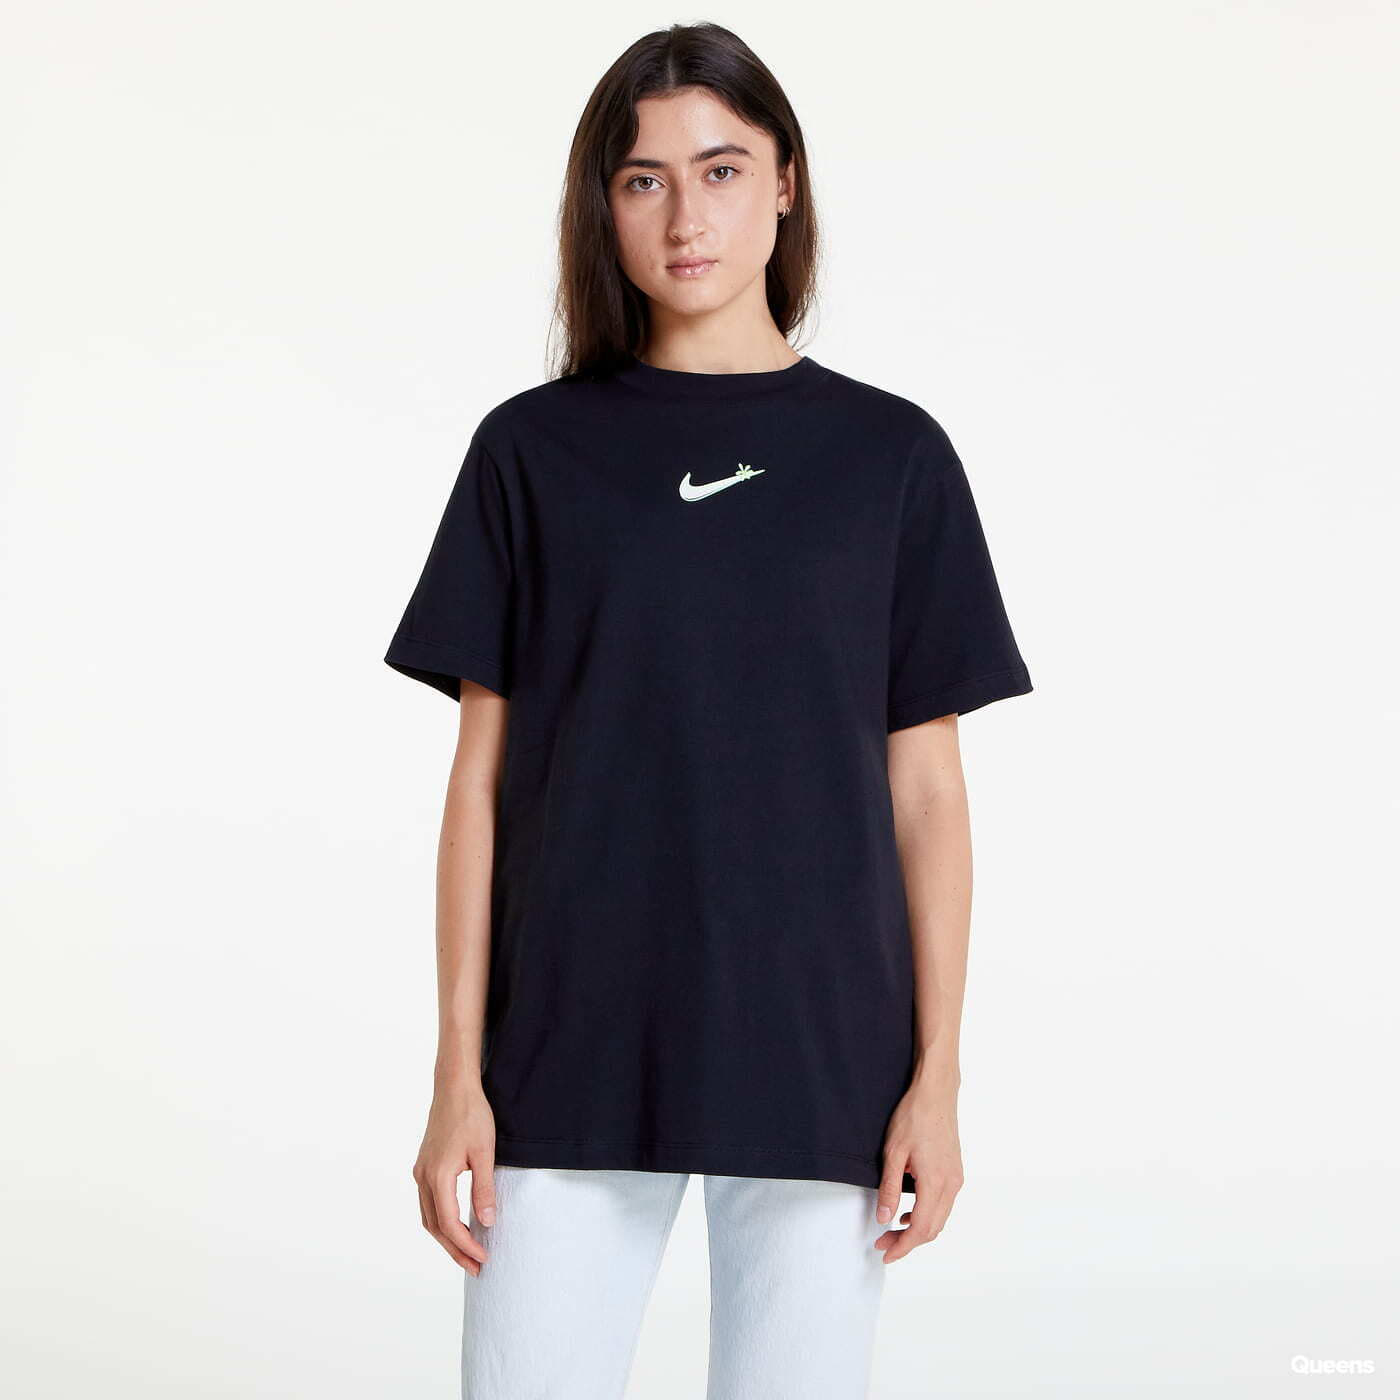  Μπλούζες Nike Sportswear Women's T-Shirt Černé